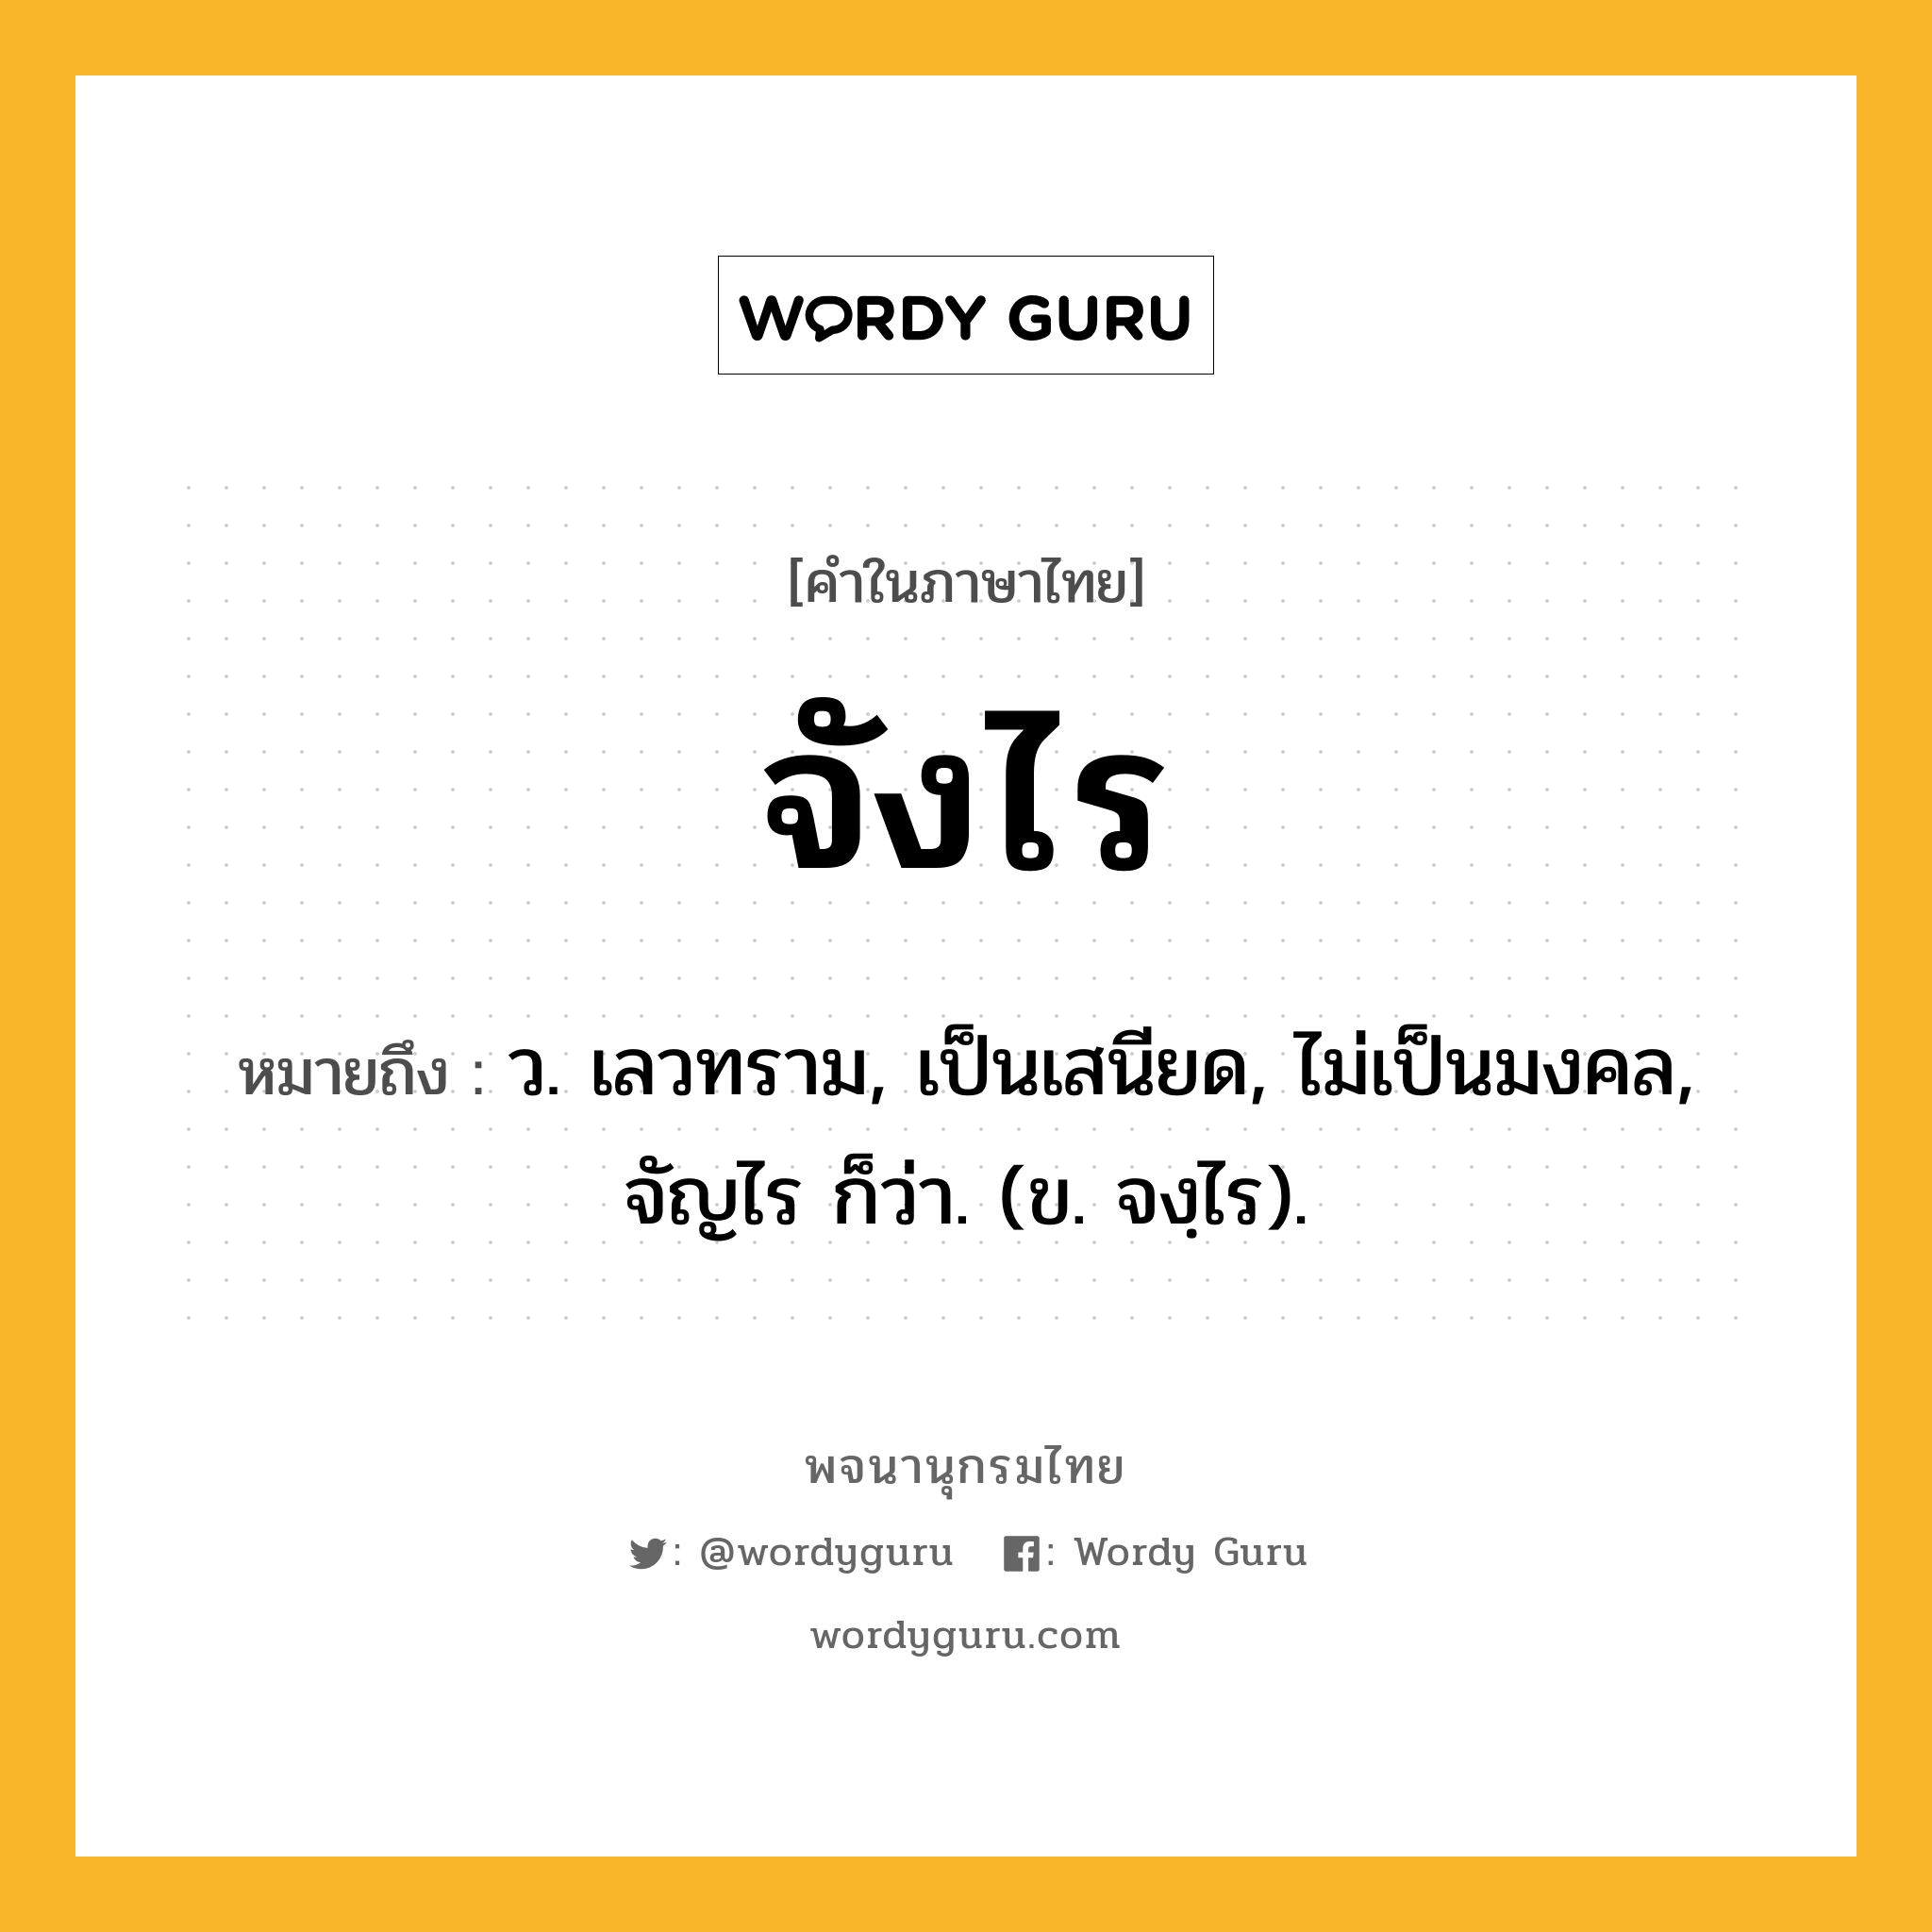 จังไร ความหมาย หมายถึงอะไร?, คำในภาษาไทย จังไร หมายถึง ว. เลวทราม, เป็นเสนียด, ไม่เป็นมงคล, จัญไร ก็ว่า. (ข. จงฺไร).